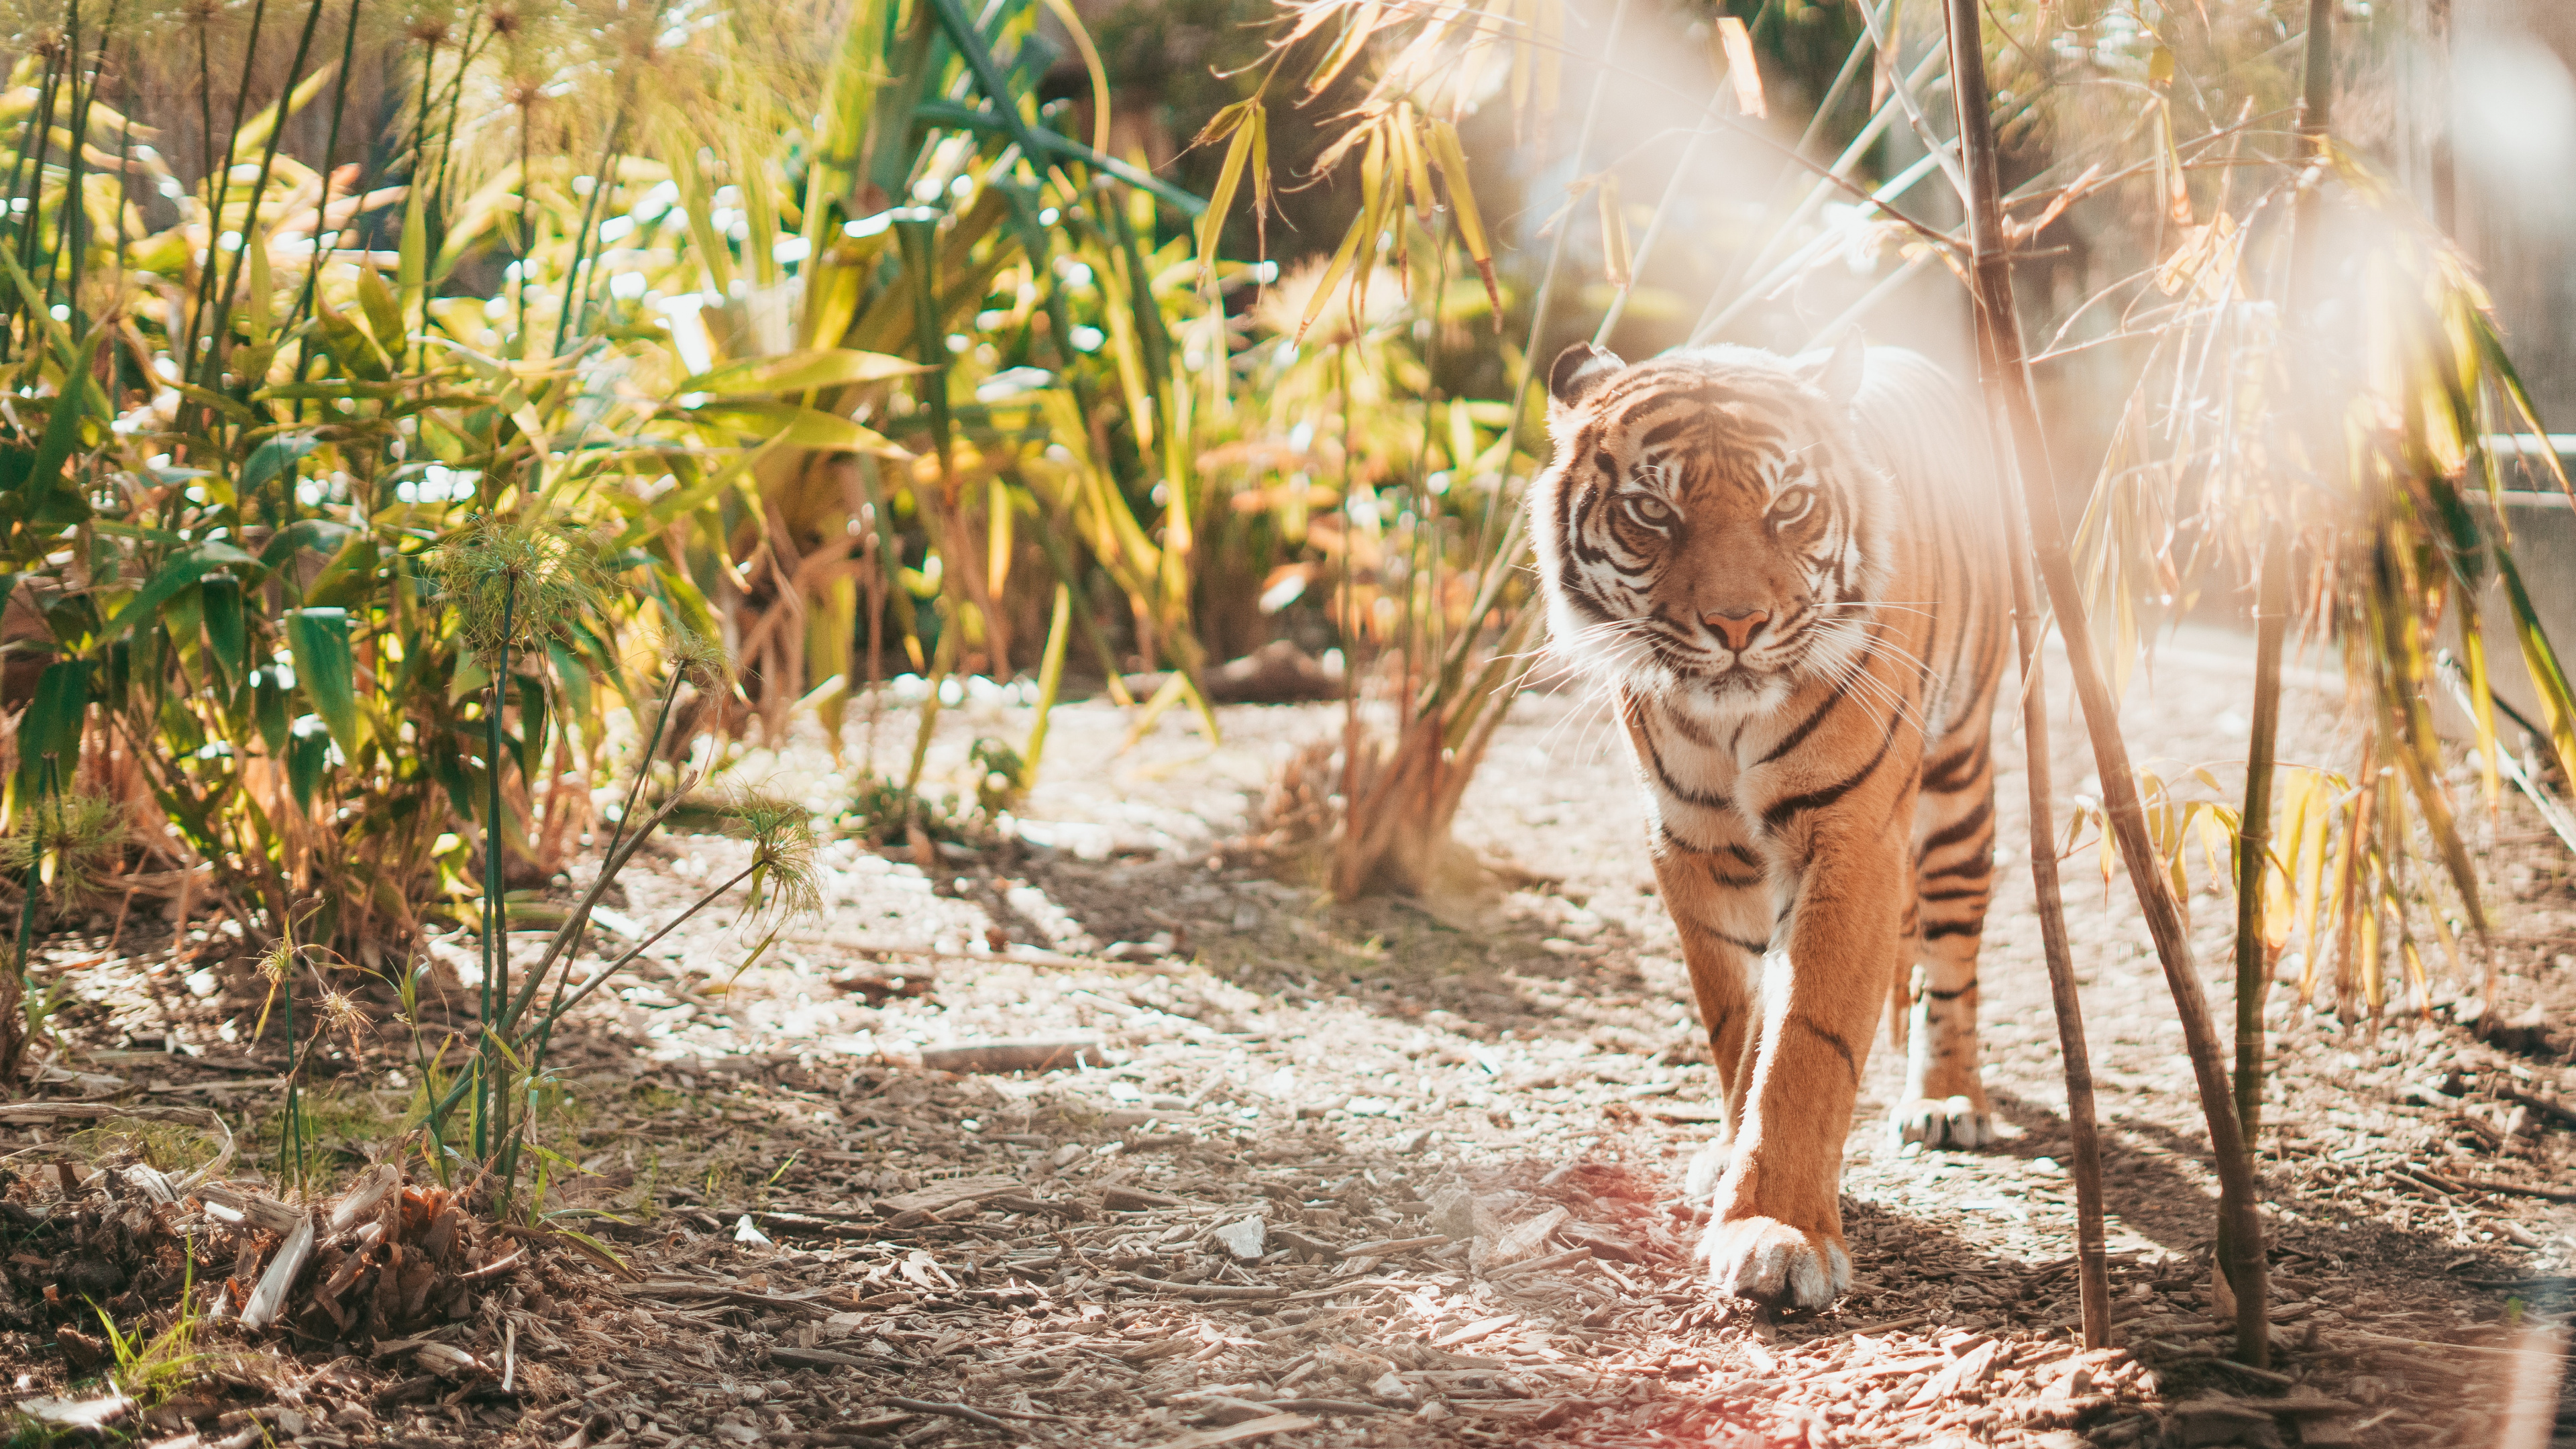 老虎, 孟加拉虎, 野生动物, 陆地动物, 猫科 壁纸 3840x2160 允许